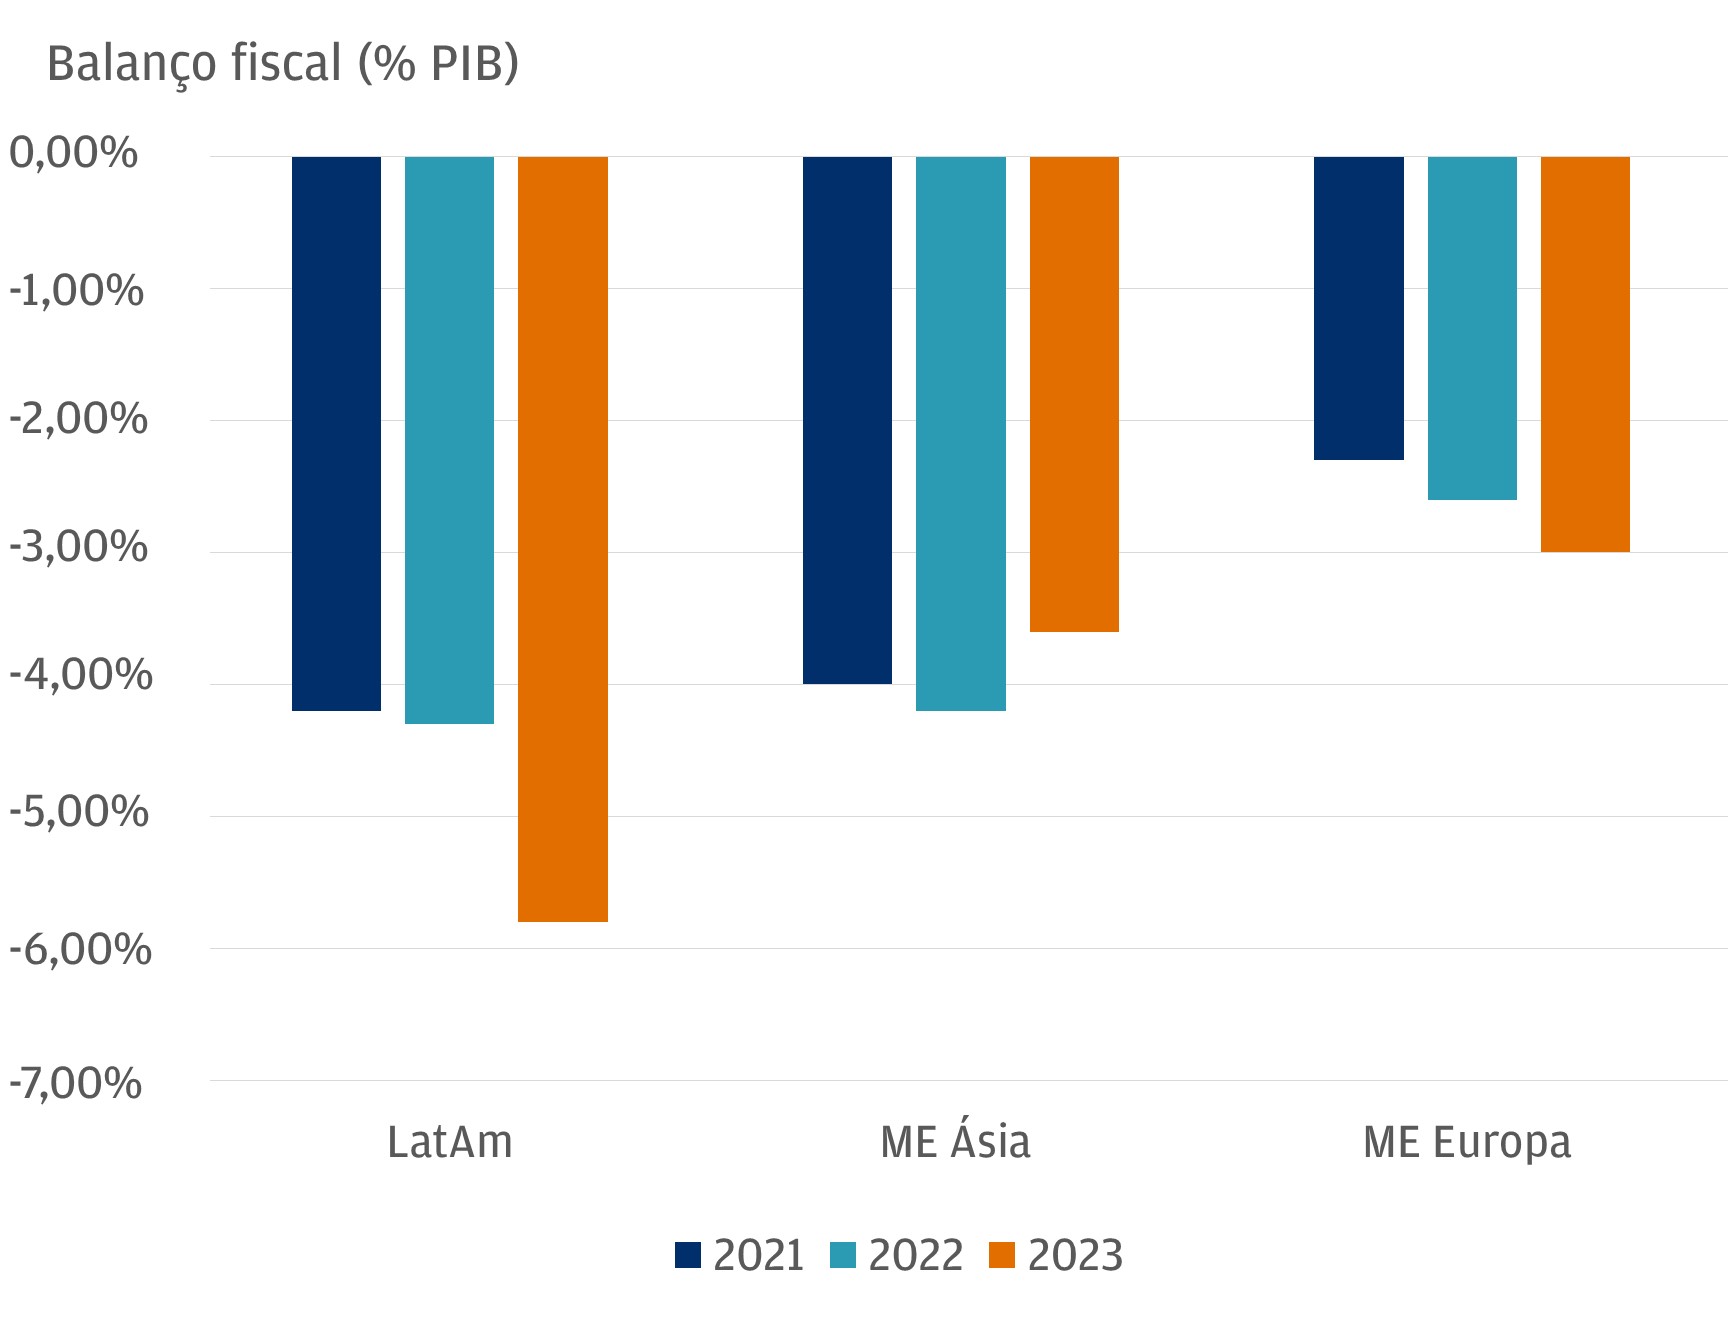 Este gráfico mostra o saldo fiscal anual, em termos percentuais, de três regiões: ME Latin America, ME Asia e ME Europe, para os anos de 2021, 2022 e 2023.